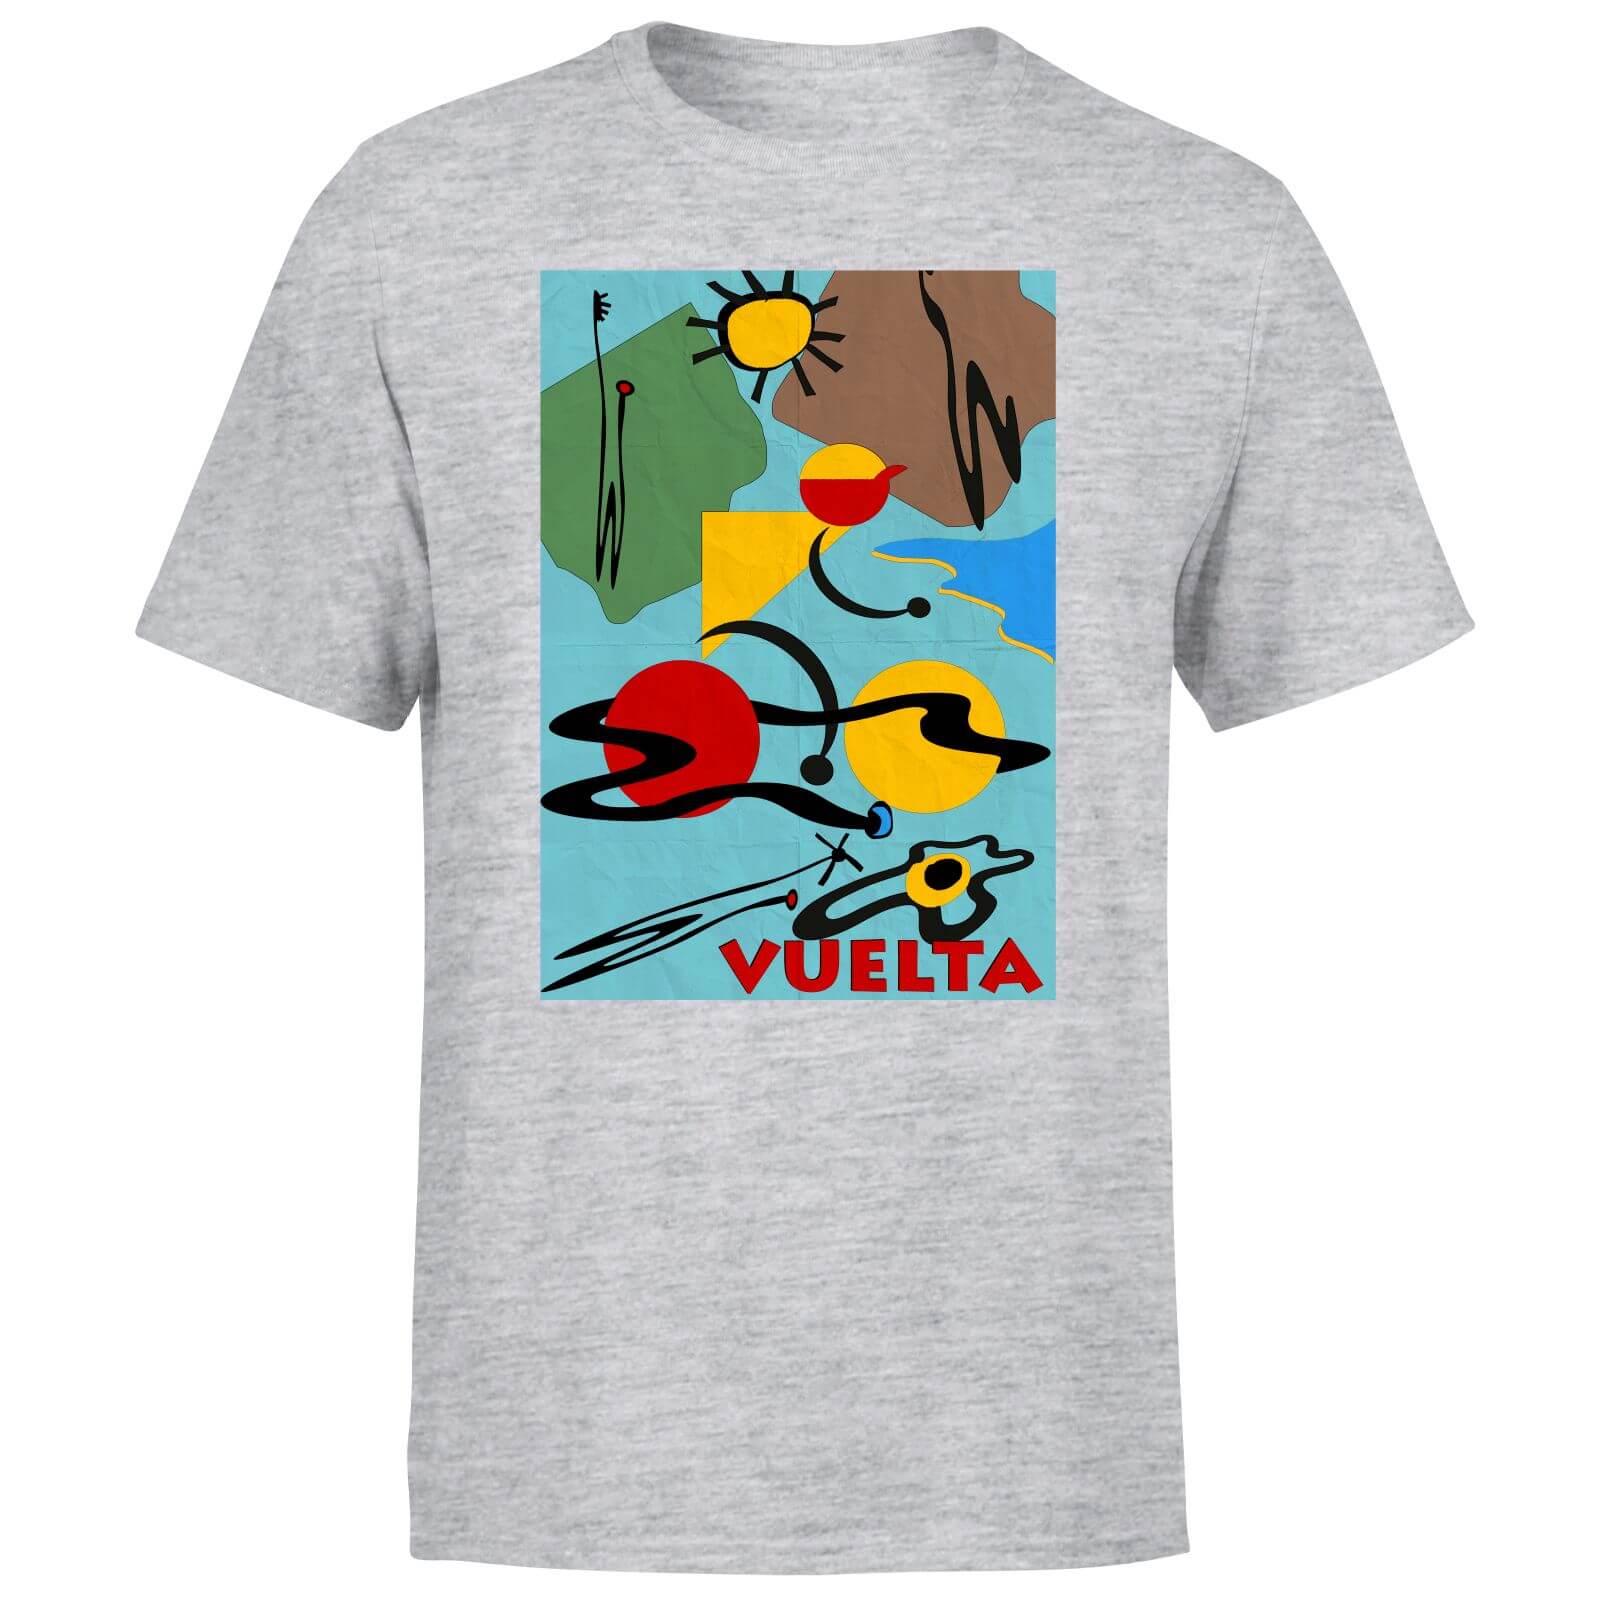 Vuelta Miro Men's T-Shirt - Grey - S - Grey